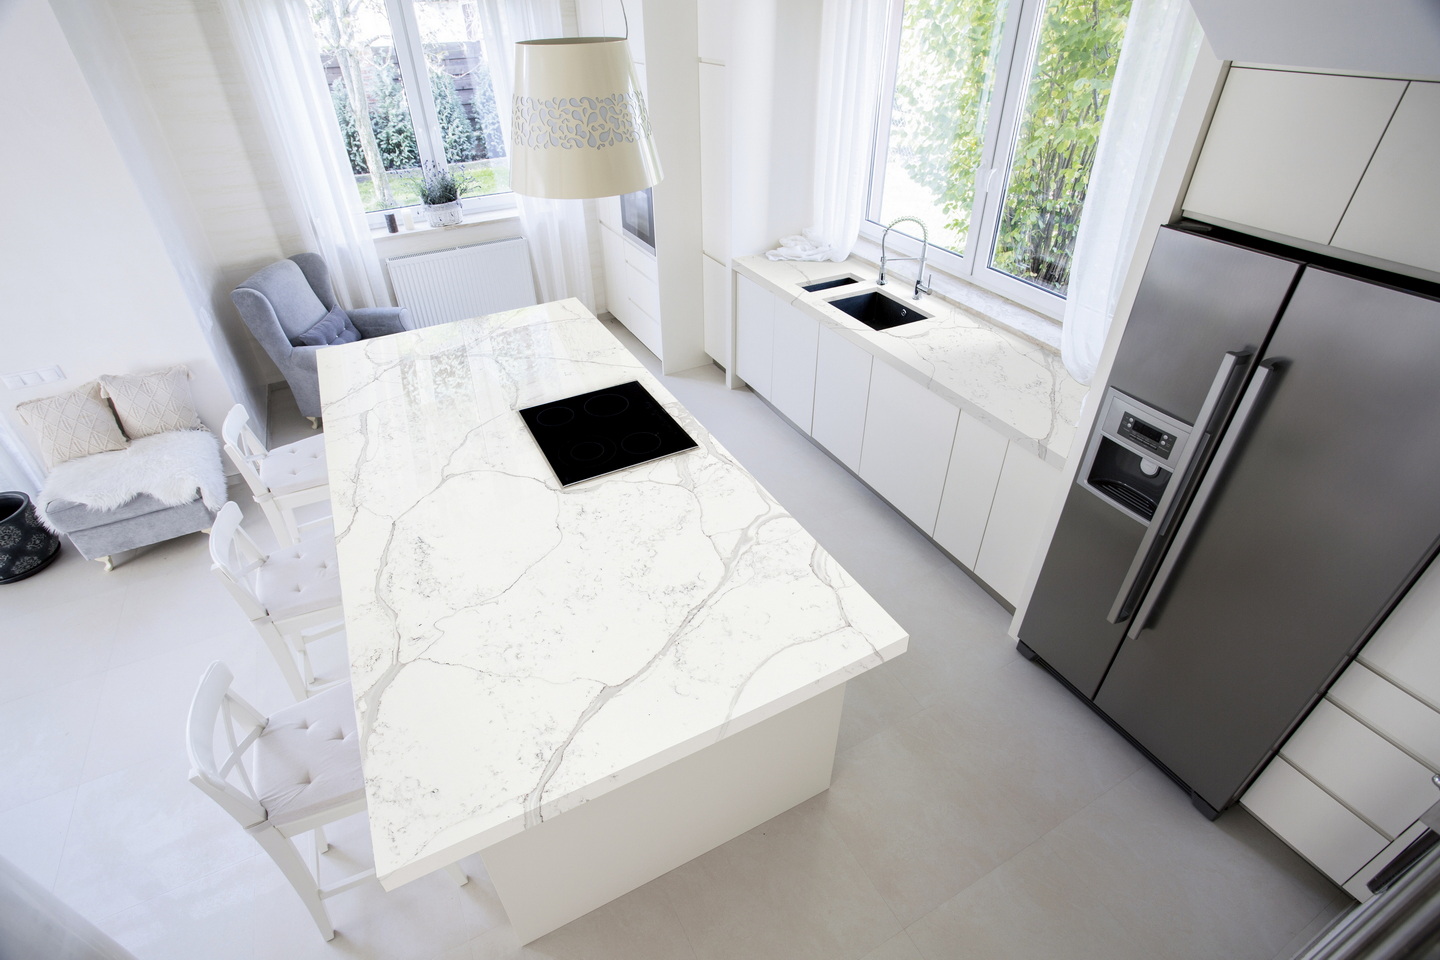 Quartz stone Calacatta white kitchen countertops